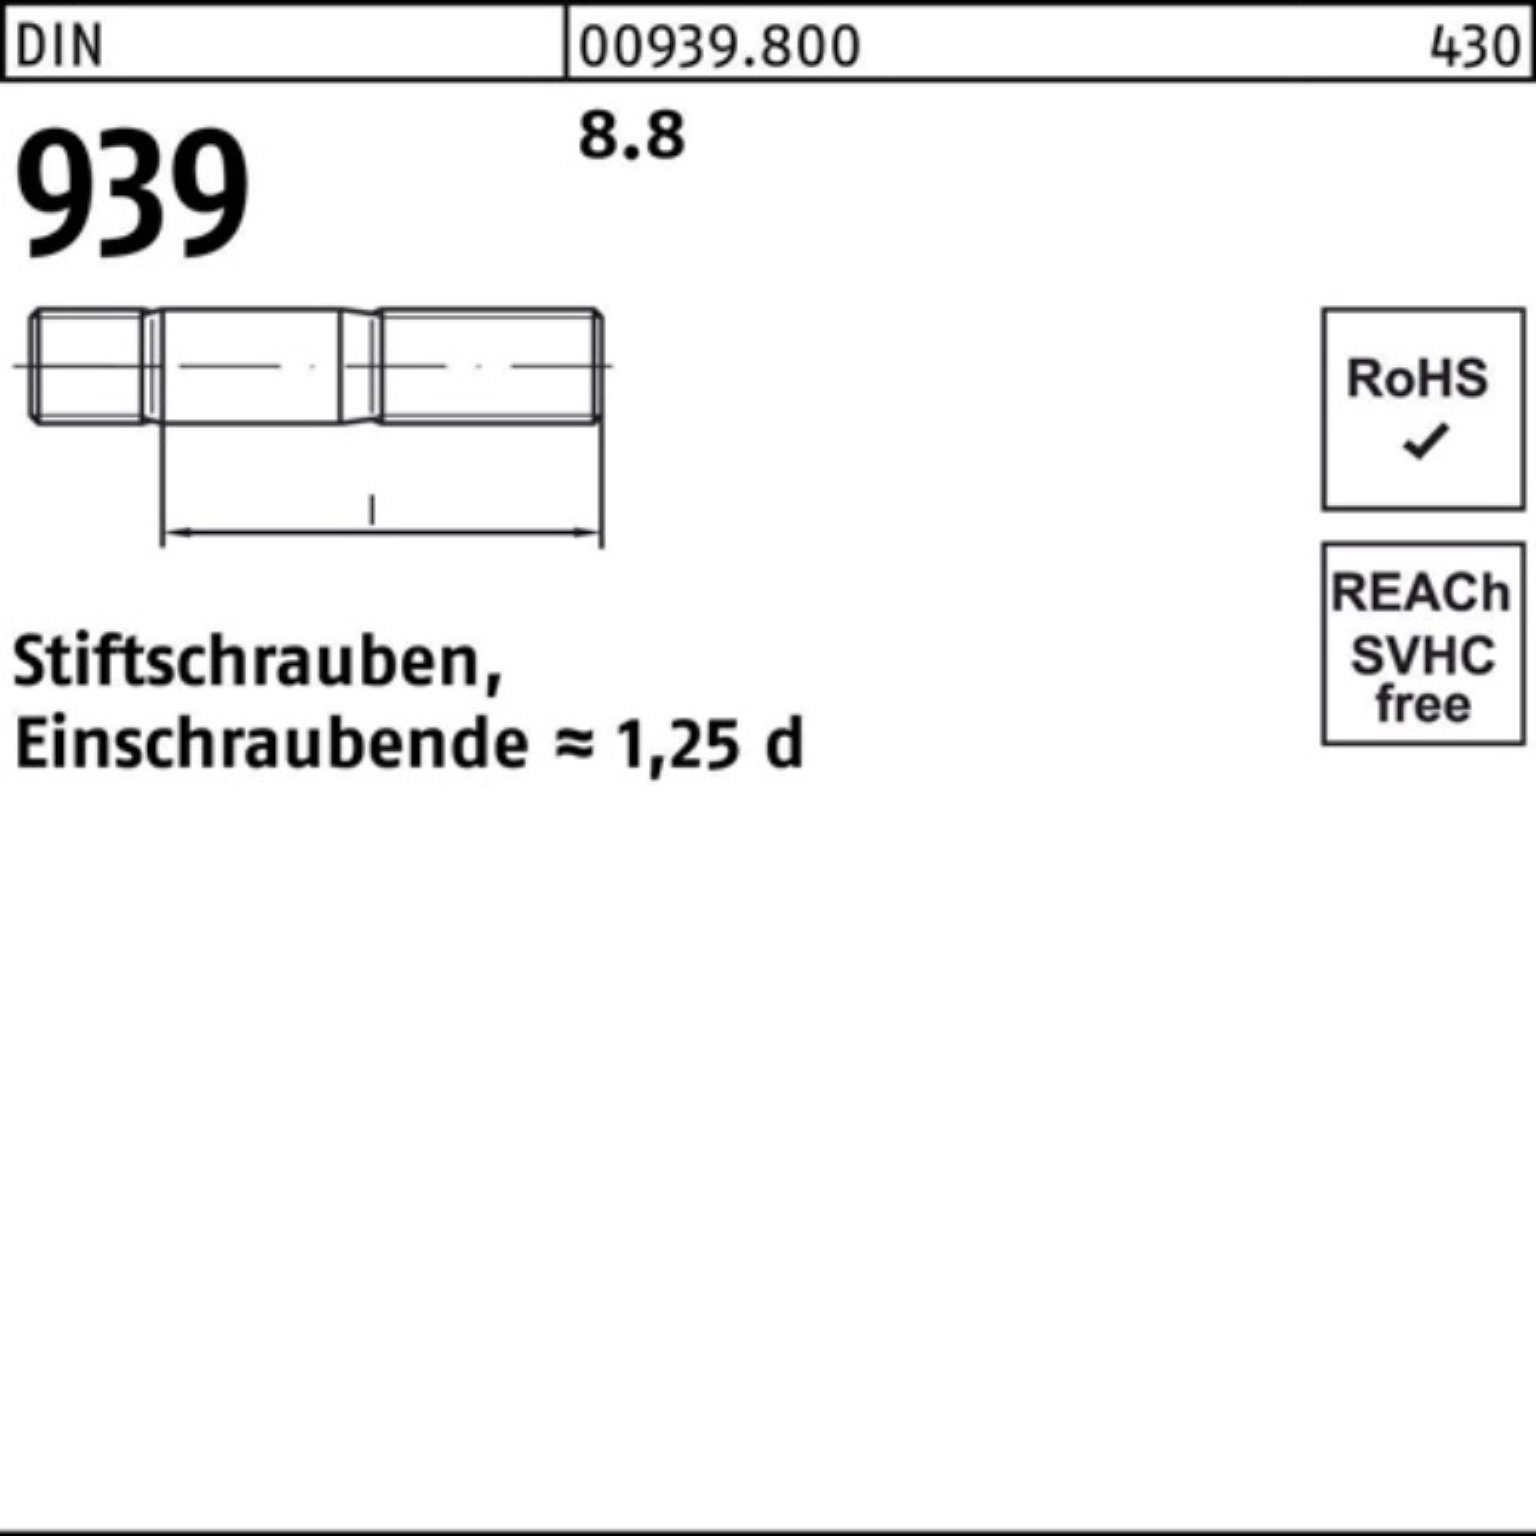 Reyher Stiftschraube 100er Pack Stiftschraube Einschraubende=1,25d 8.8 DIN M12x S 25 80 939